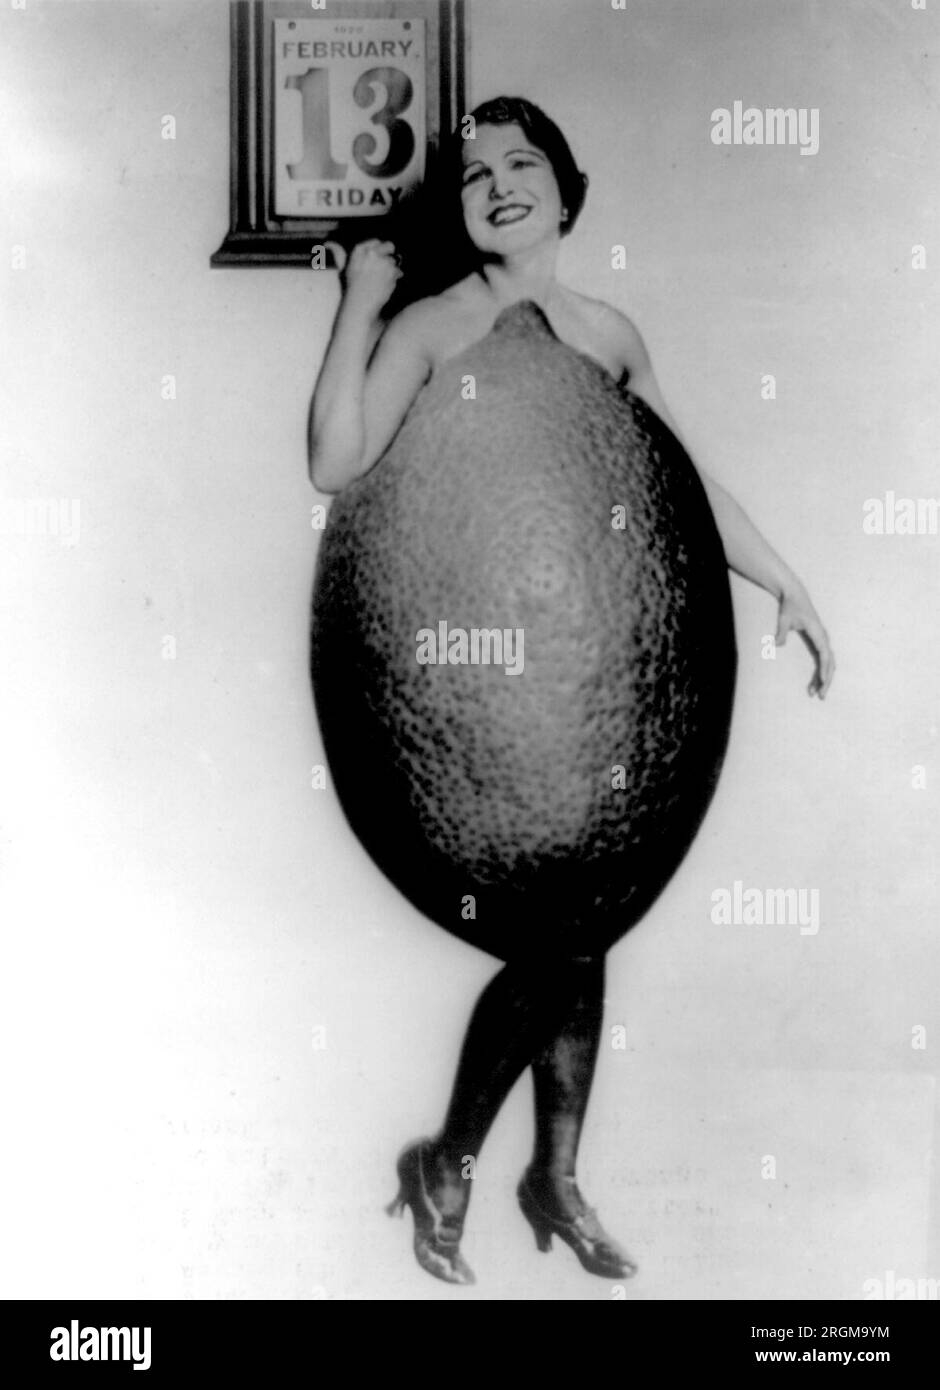 Miss Rose Cade--Reine des citrons - Rose Cade, qui a également été nommée fille du sud de la Californie 'Swat the Jinx', habillée en modèle de grand citron pointant vers le calendrier daté vendredi 13 février 1920 ca. 1920 Banque D'Images